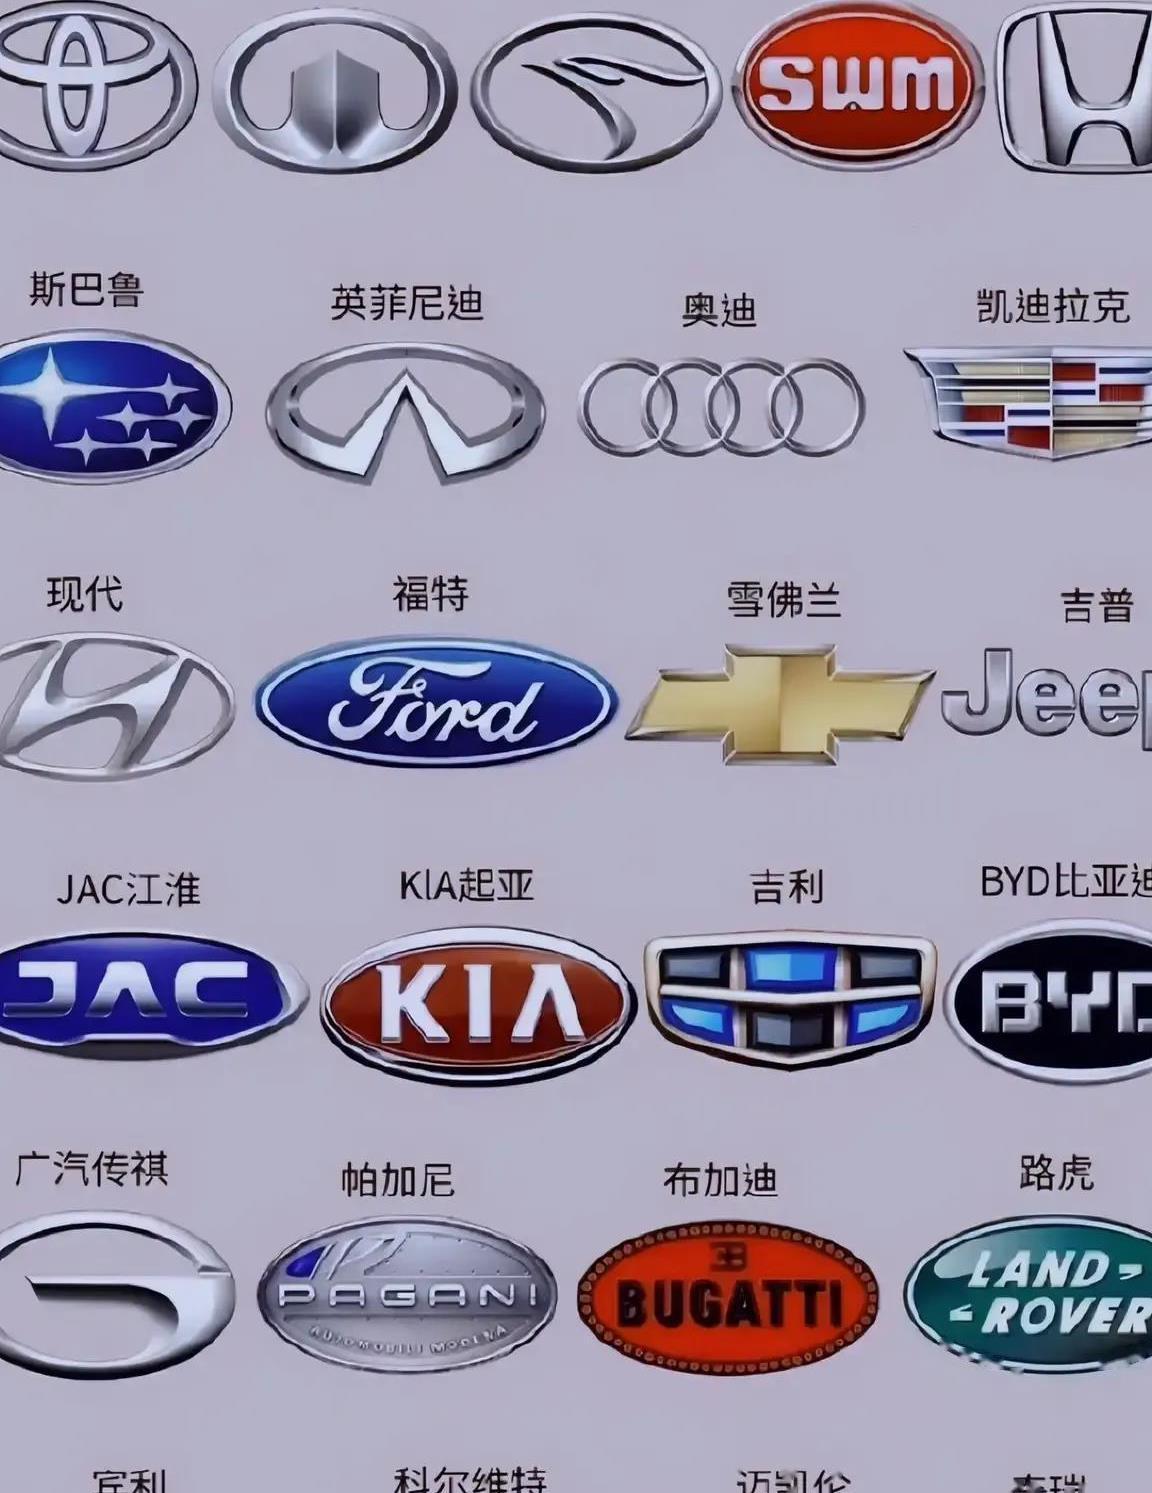 车标是汽车的象征,每个车标都承载着一家汽车品牌的独特风格和历史